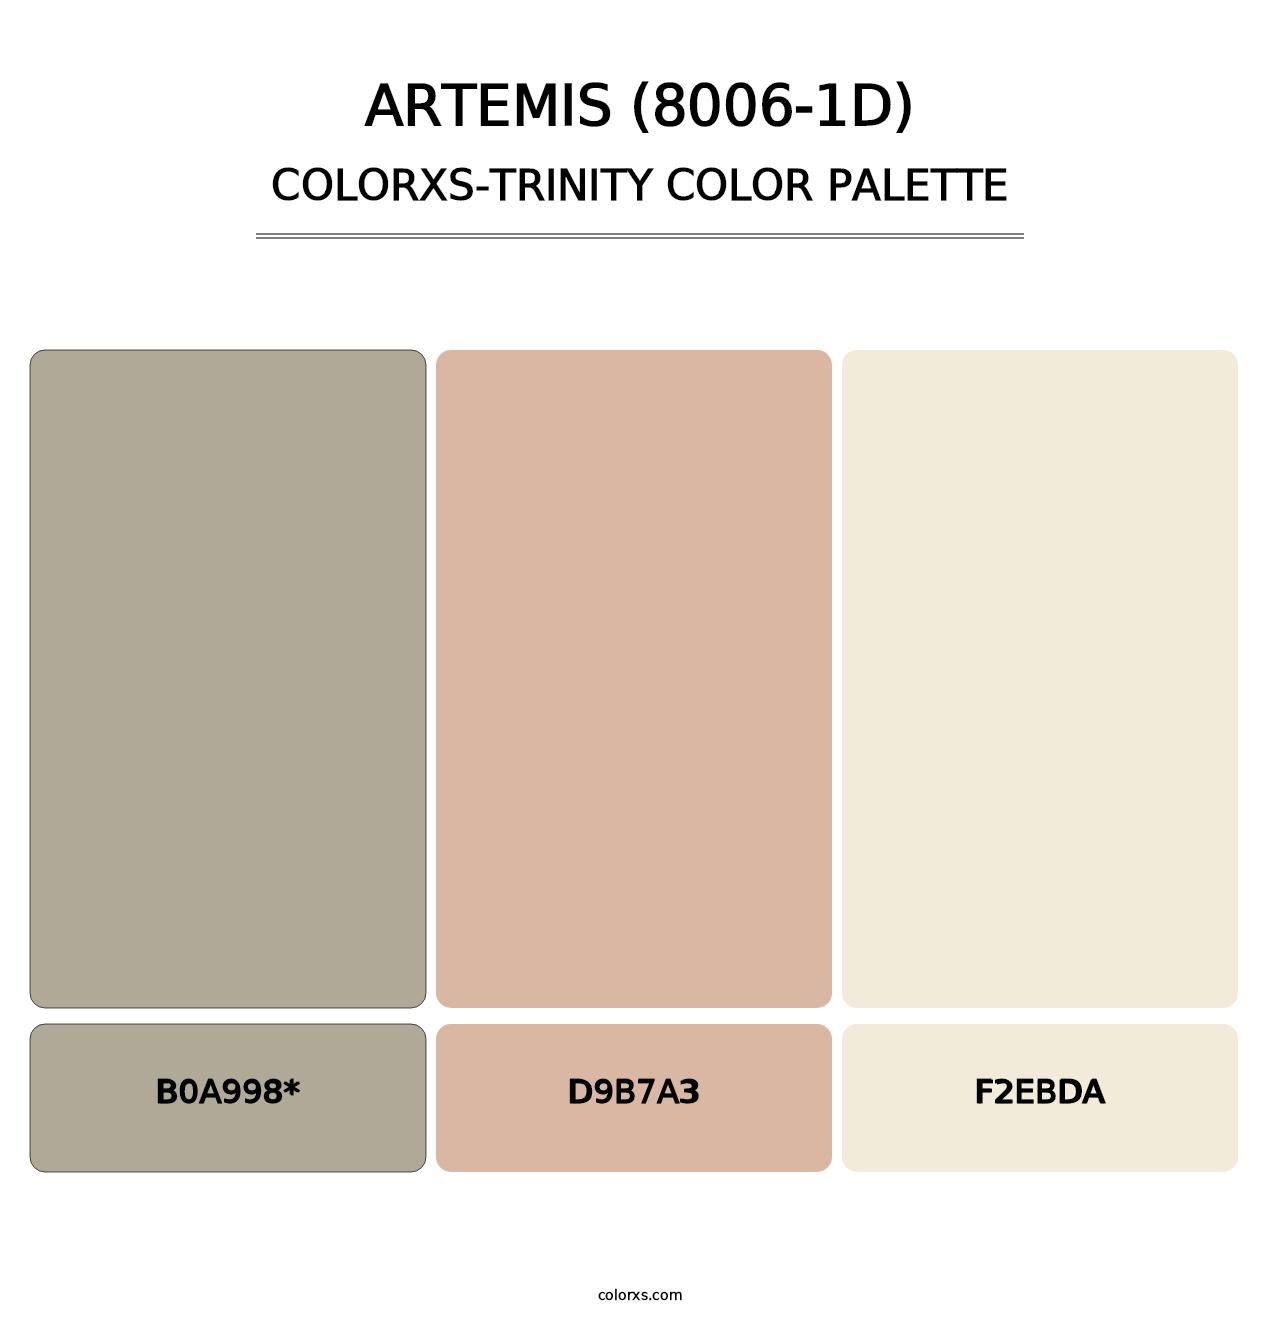 Artemis (8006-1D) - Colorxs Trinity Palette